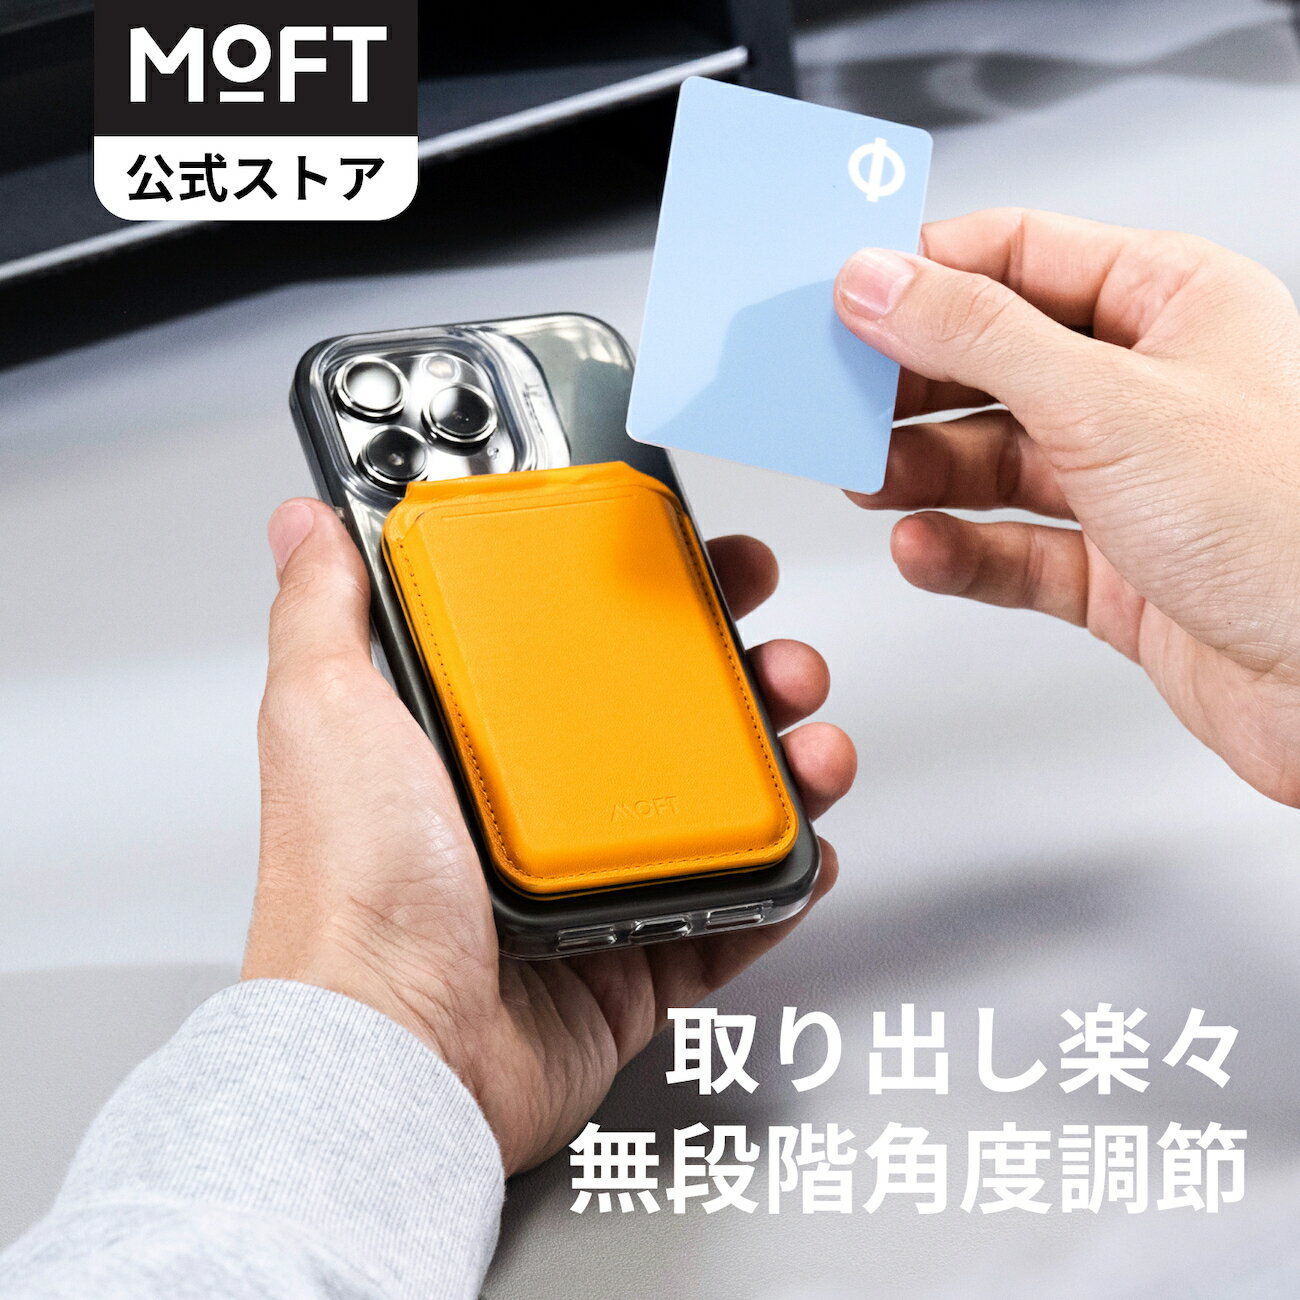 【MOFT公式〜無段階調整】MOFT公式 「Flash」 ウォレットスタンド マグネット カードケース MagSafe対応 スマホスタンド iPhone 14/iPhone 13/iPhone 12シリーズ兼用 カードウィンドウ付き カード収納 多角度調節